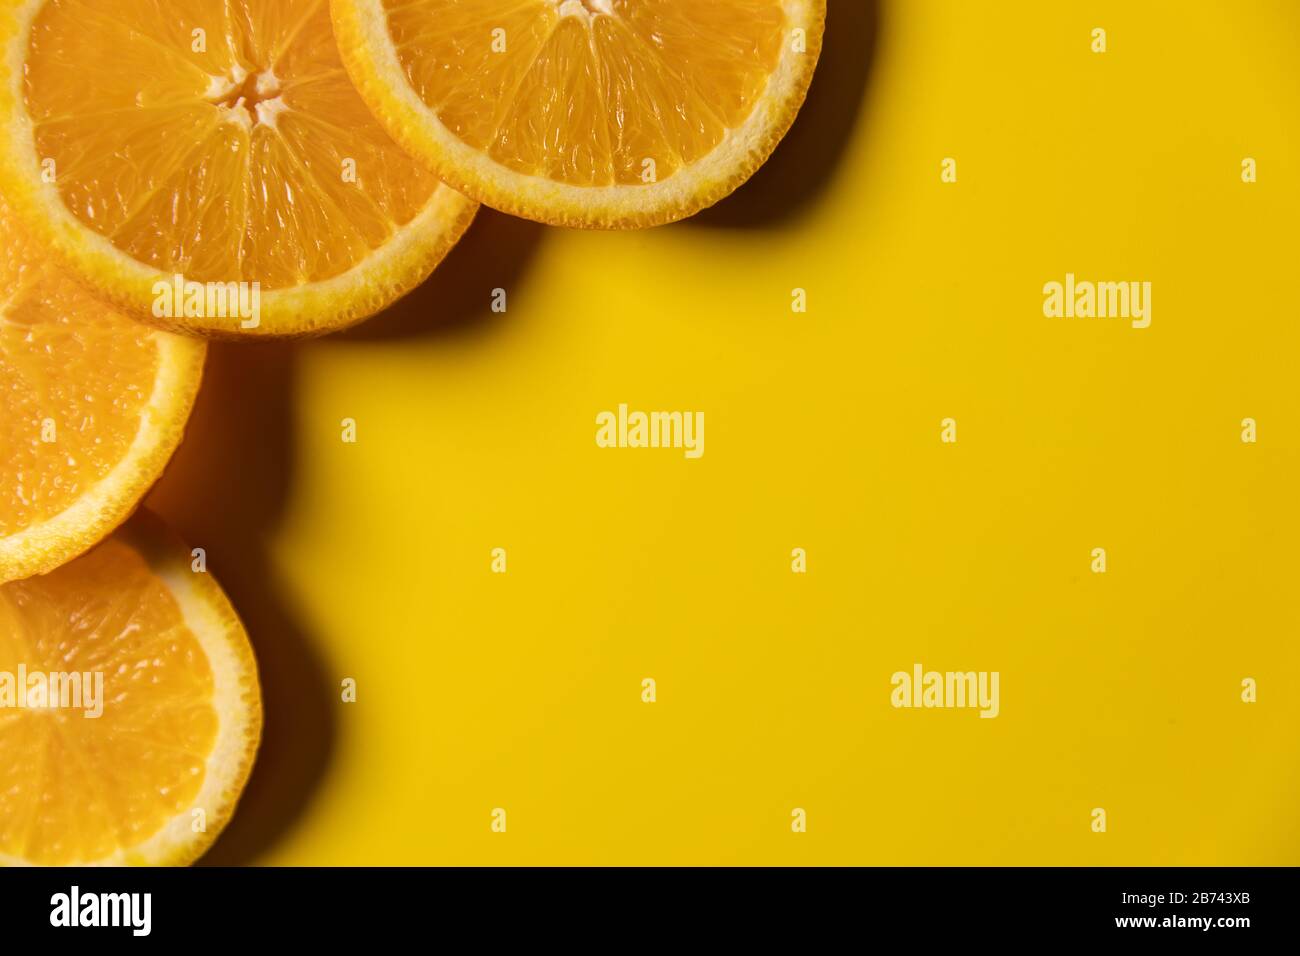 tranches de fruits orange sur fond jaune avec espace de copie. vue de dessus Banque D'Images